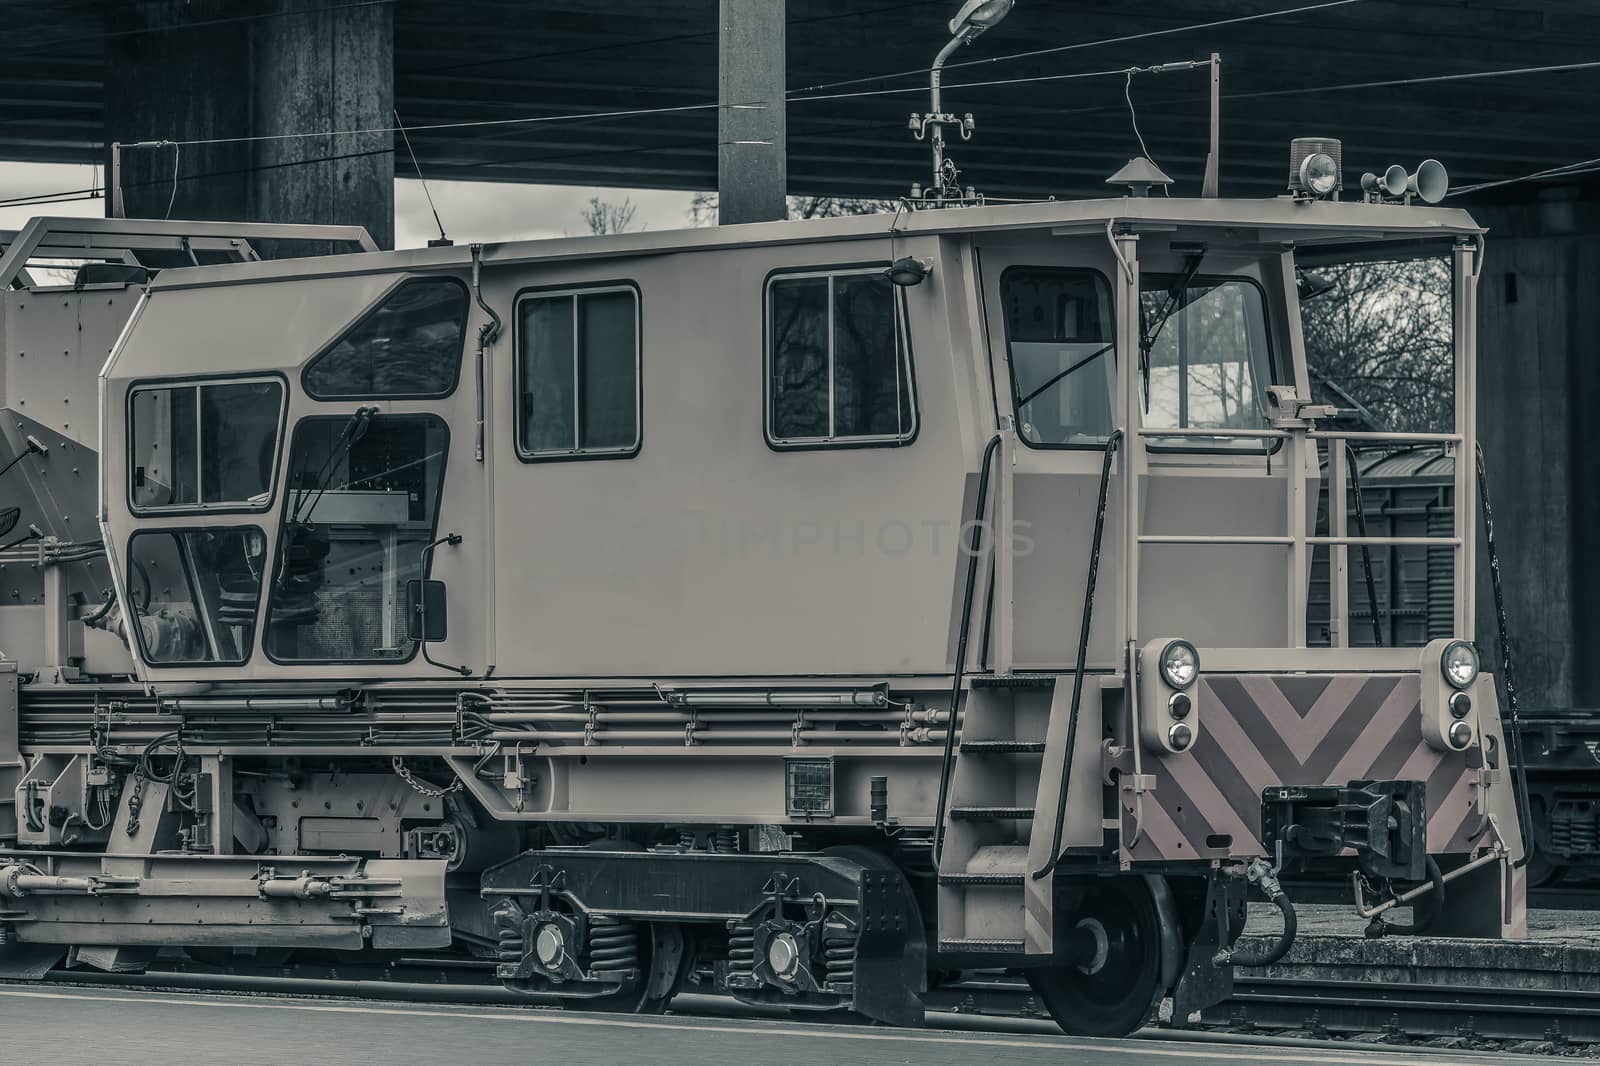 Industry repair train by sengnsp